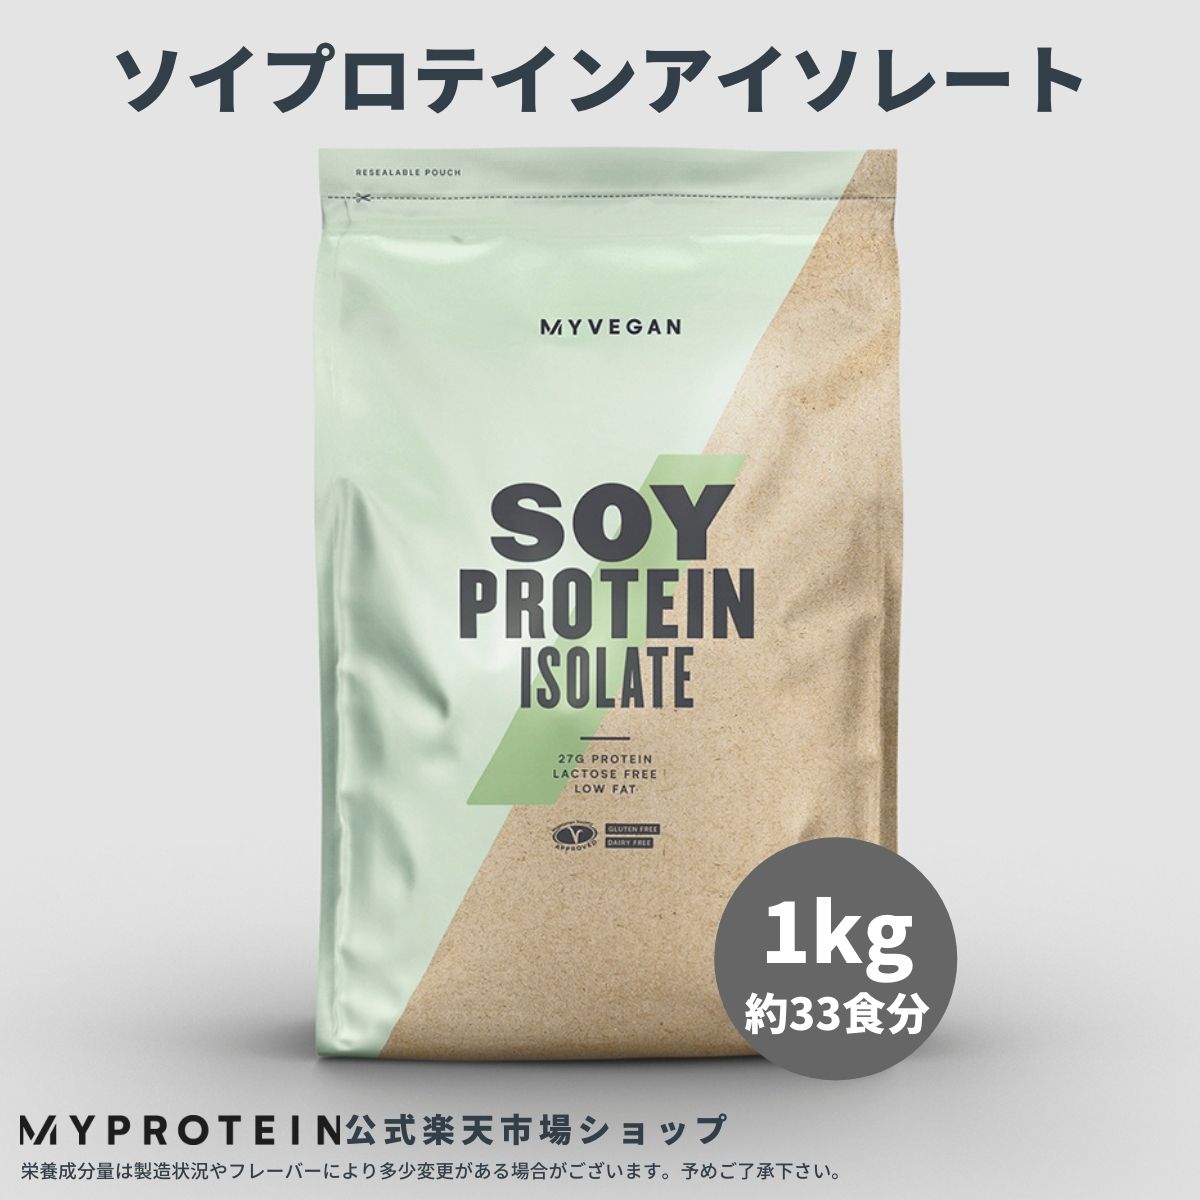 楽天市場 マイプロテイン 公式 Myprotein ソイプロテイン アイソレート 2 5kg 約食分 楽天海外直送 マイプロテイン 楽天市場店